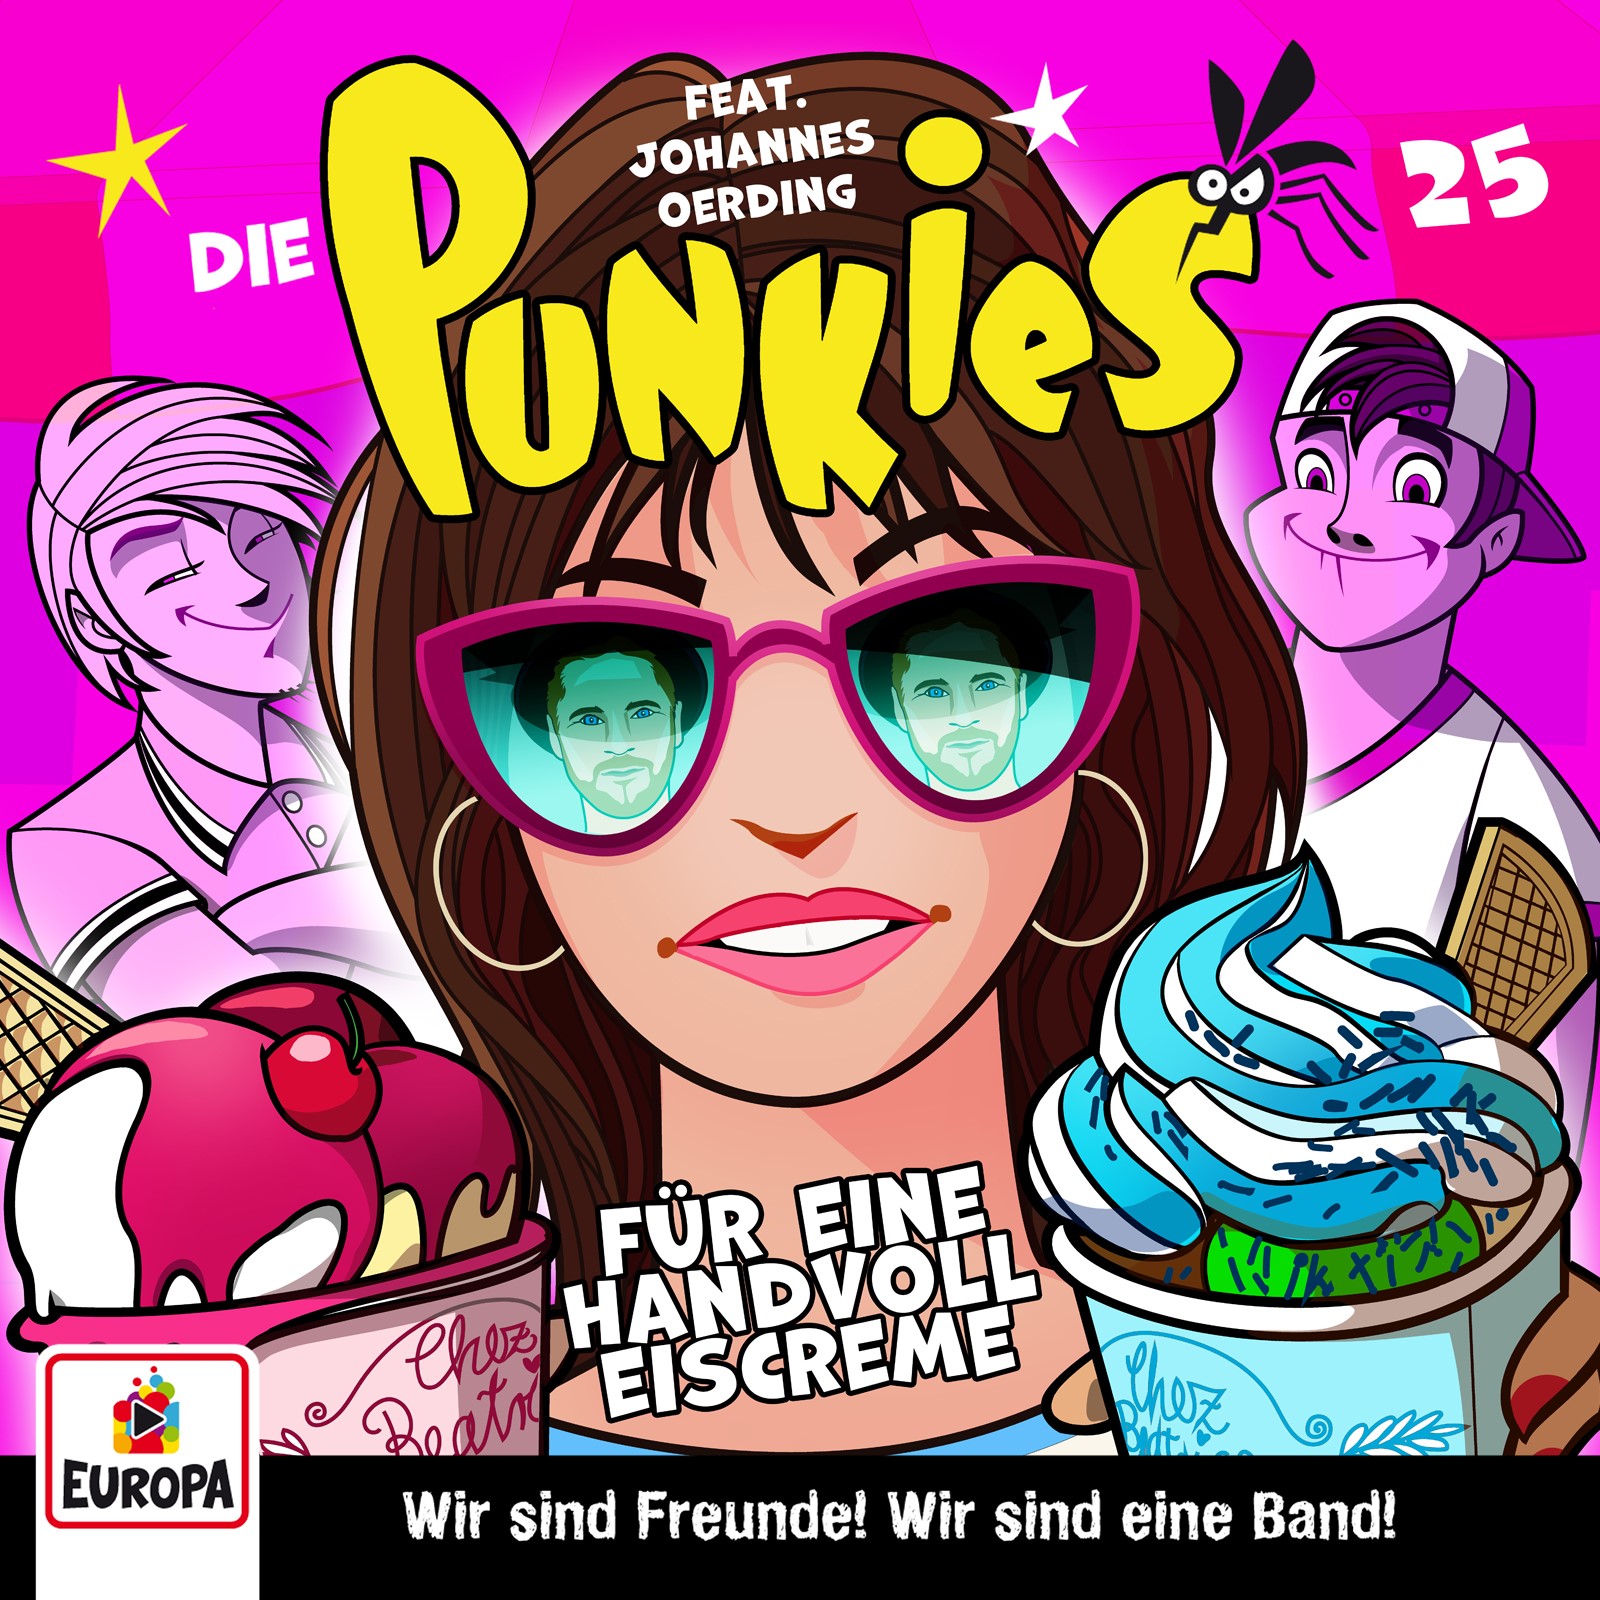 Die Punkies  - Für eine Handvoll Eiscreme!